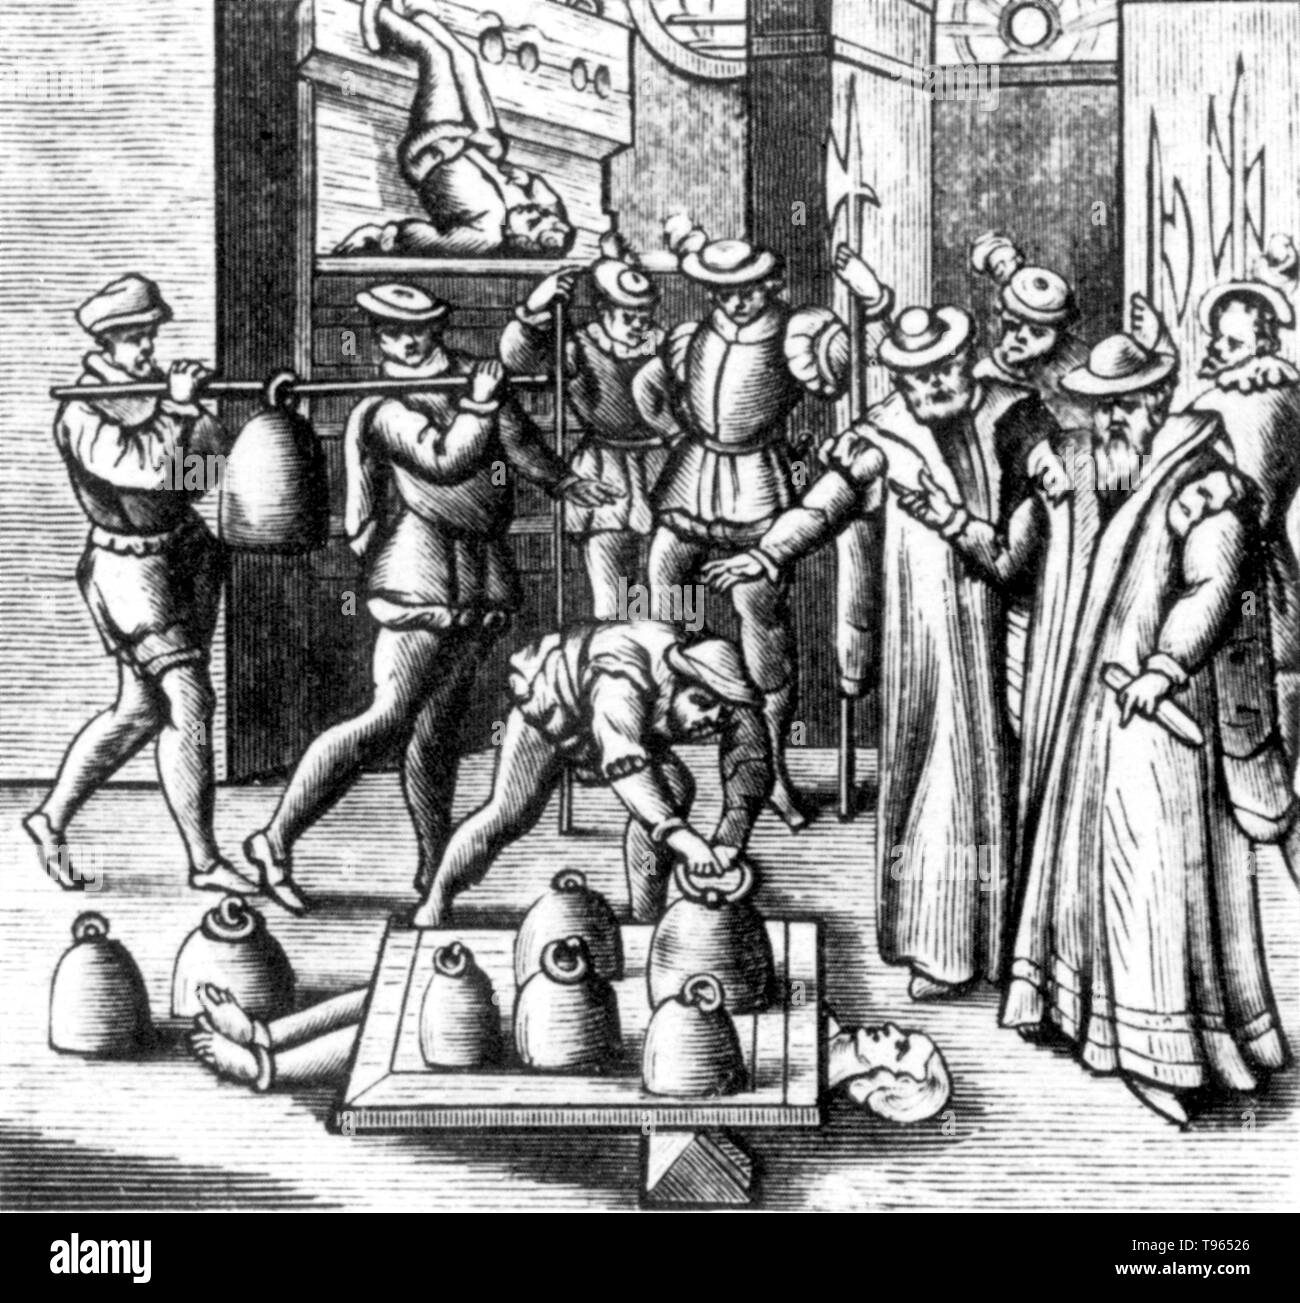 Peine forte et dimiento (duro y fuerte castigo) era un método de tortura  utilizadas anteriormente en el sistema jurídico del common law, en los que  el demandado quien se negó a declararse